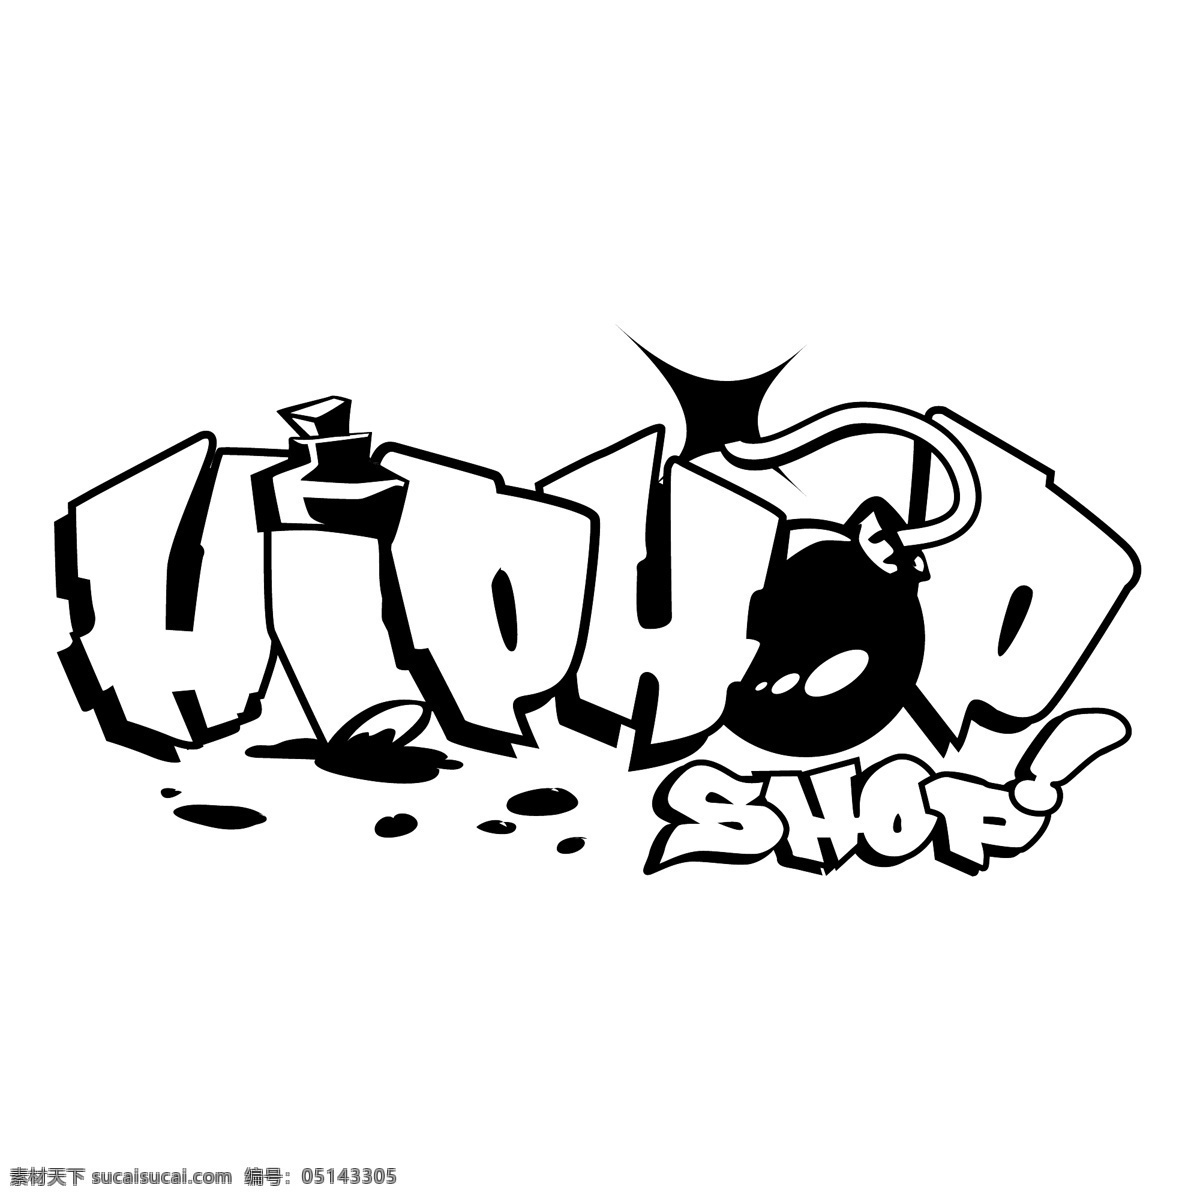 嘻哈 店 免费 标志 标识 psd源文件 logo设计